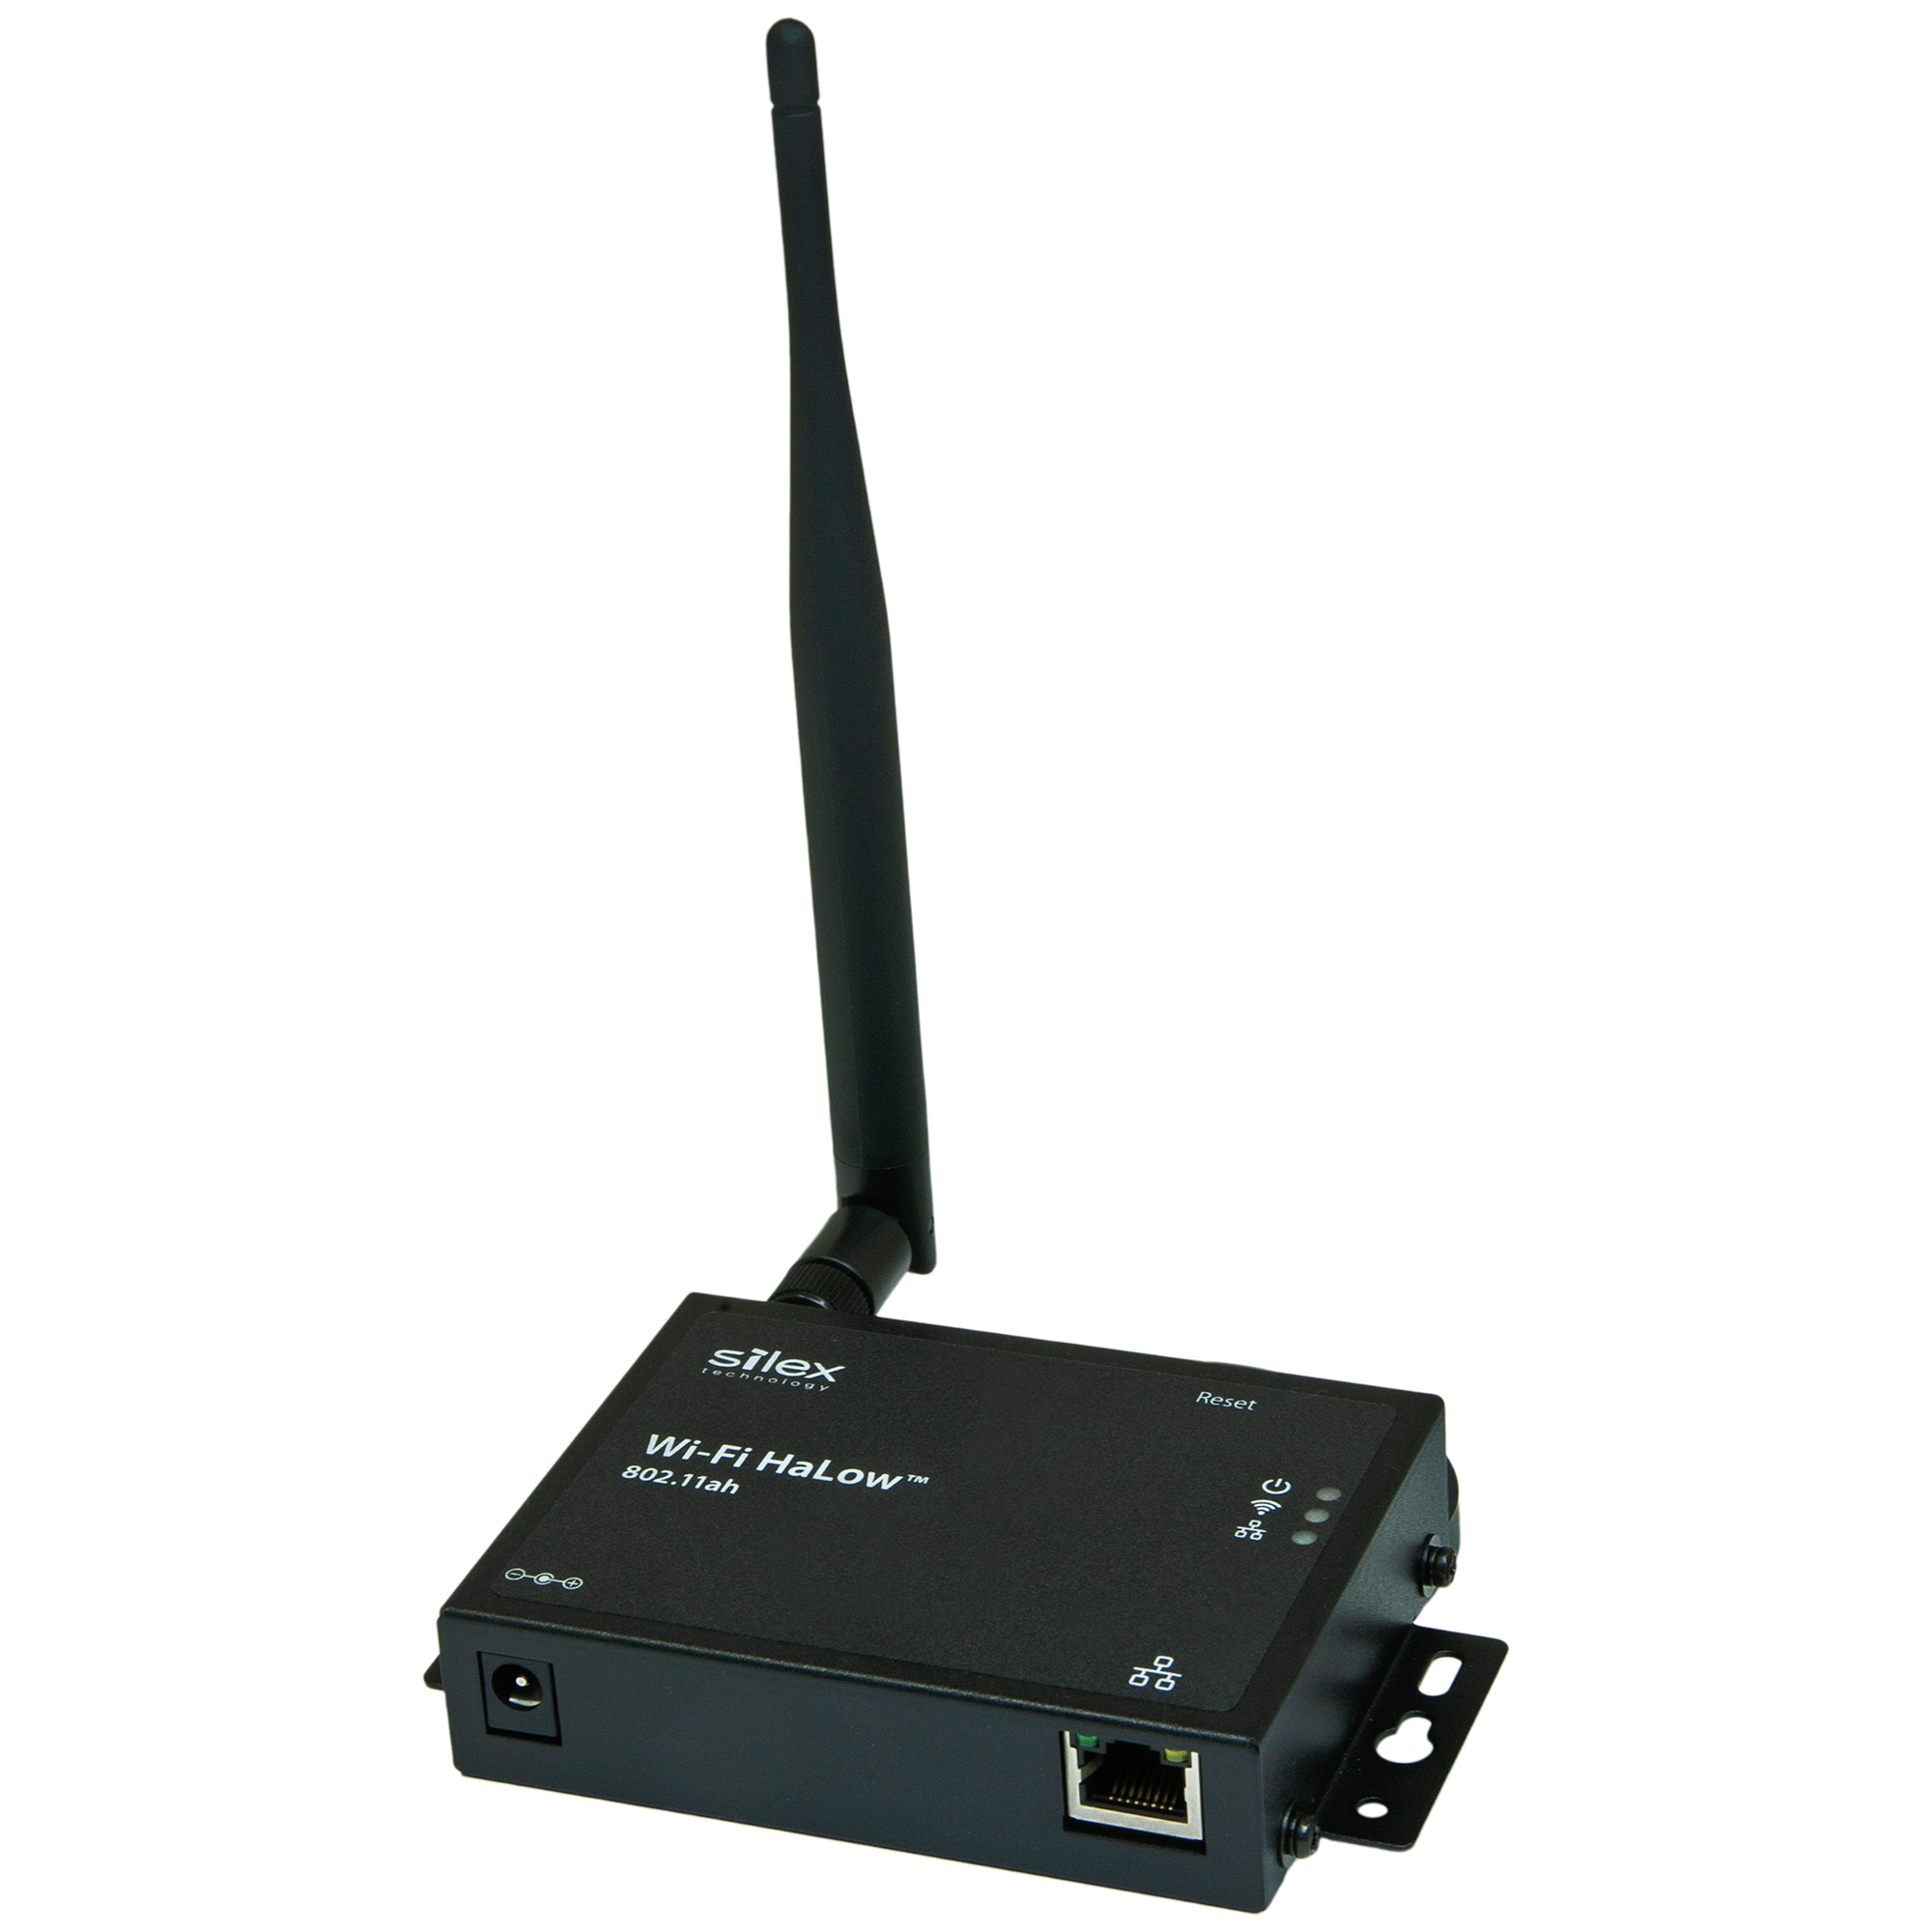 agradable Posicionamiento en buscadores político 802.11ah Wi-Fi HaLow Ethernet to Wi-Fi bridge - BR-100AH